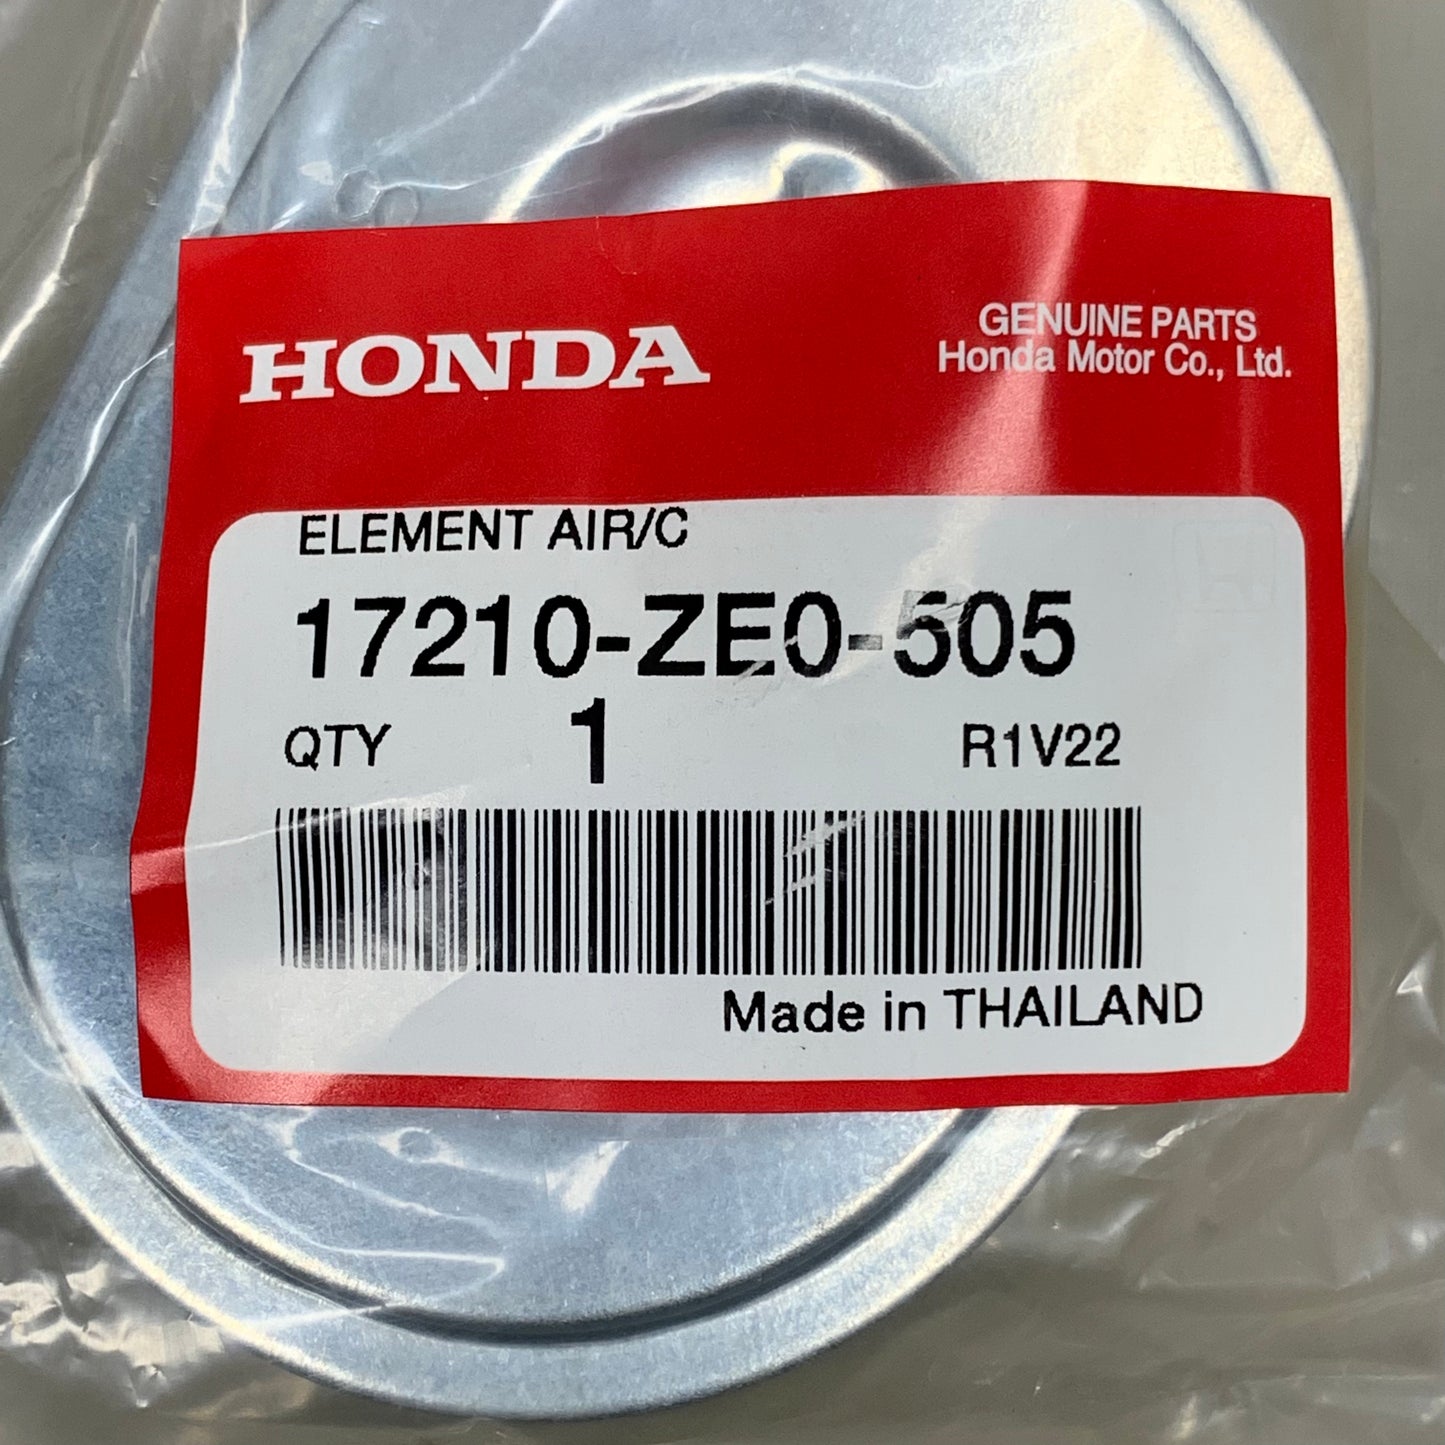 HONDA 3PK Air Filter OEM Fits GX110 GX120 17210-ZE0-505 (New)